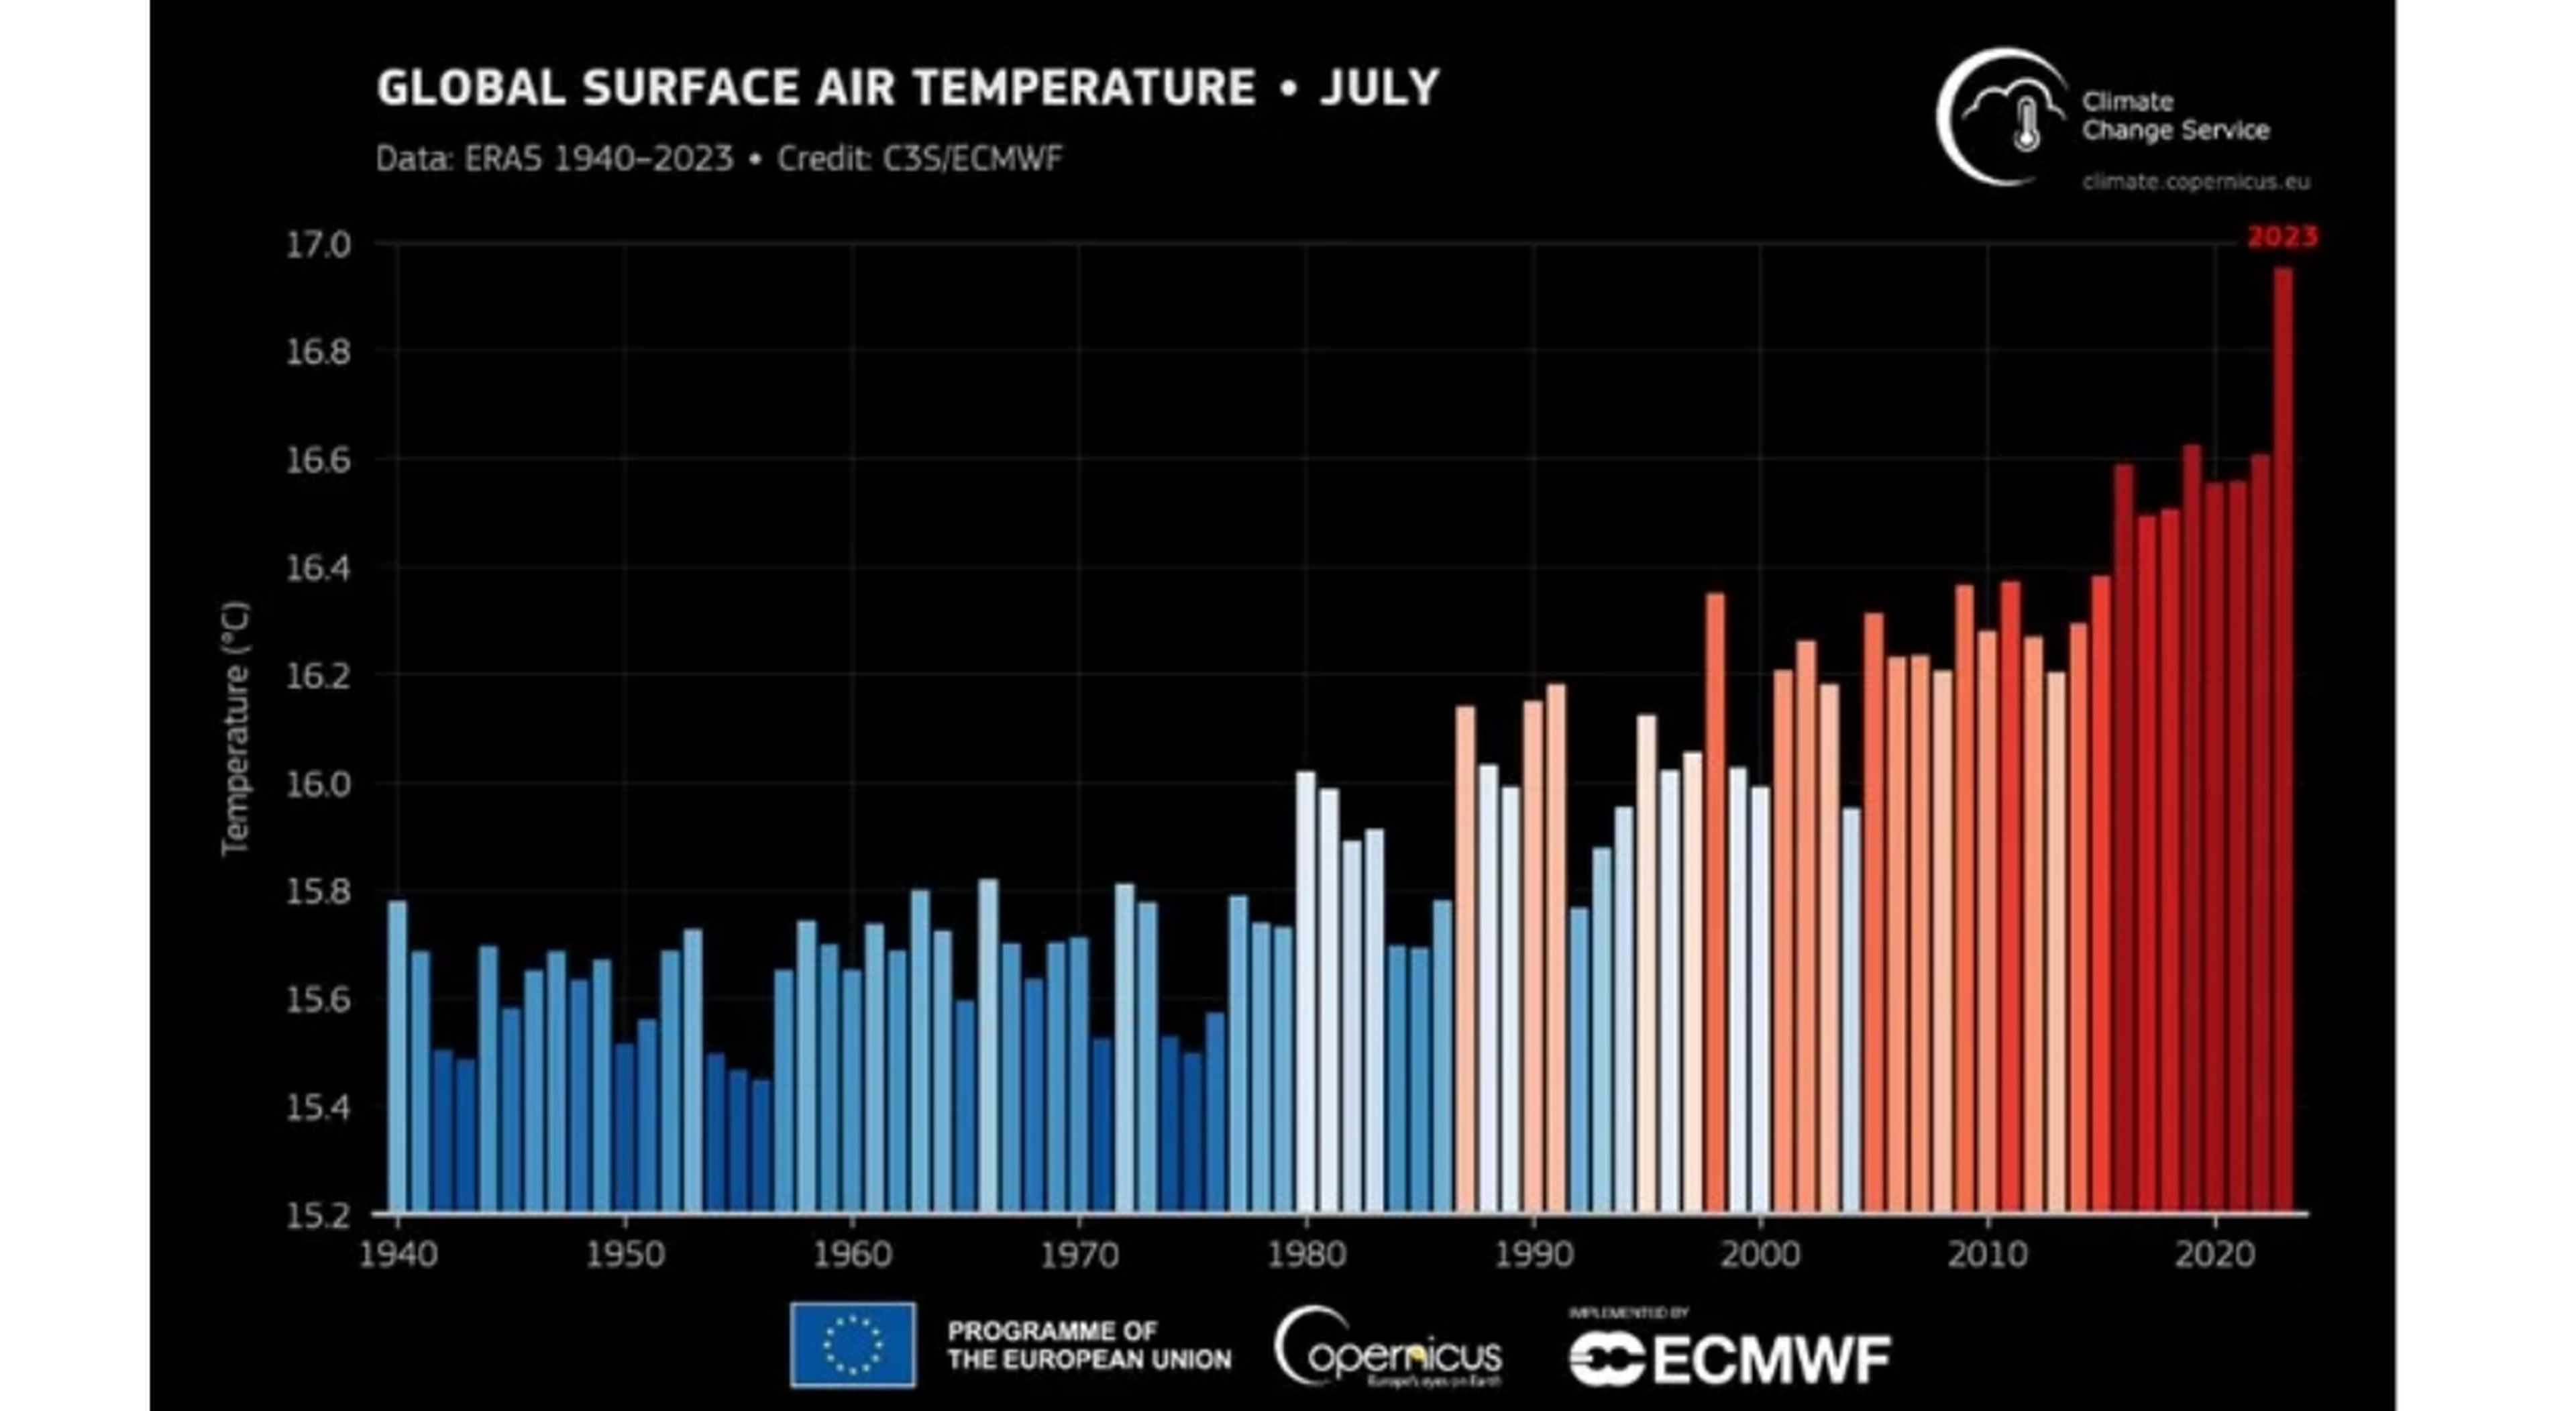 Temperatura media global del aire en superficie para todos los meses de julio desde 1940 hasta 2023. Los tonos azules indican años más fríos que la media, mientras que los rojos indican años más cálidos que la media. Fuente: C3S/ECMWF.